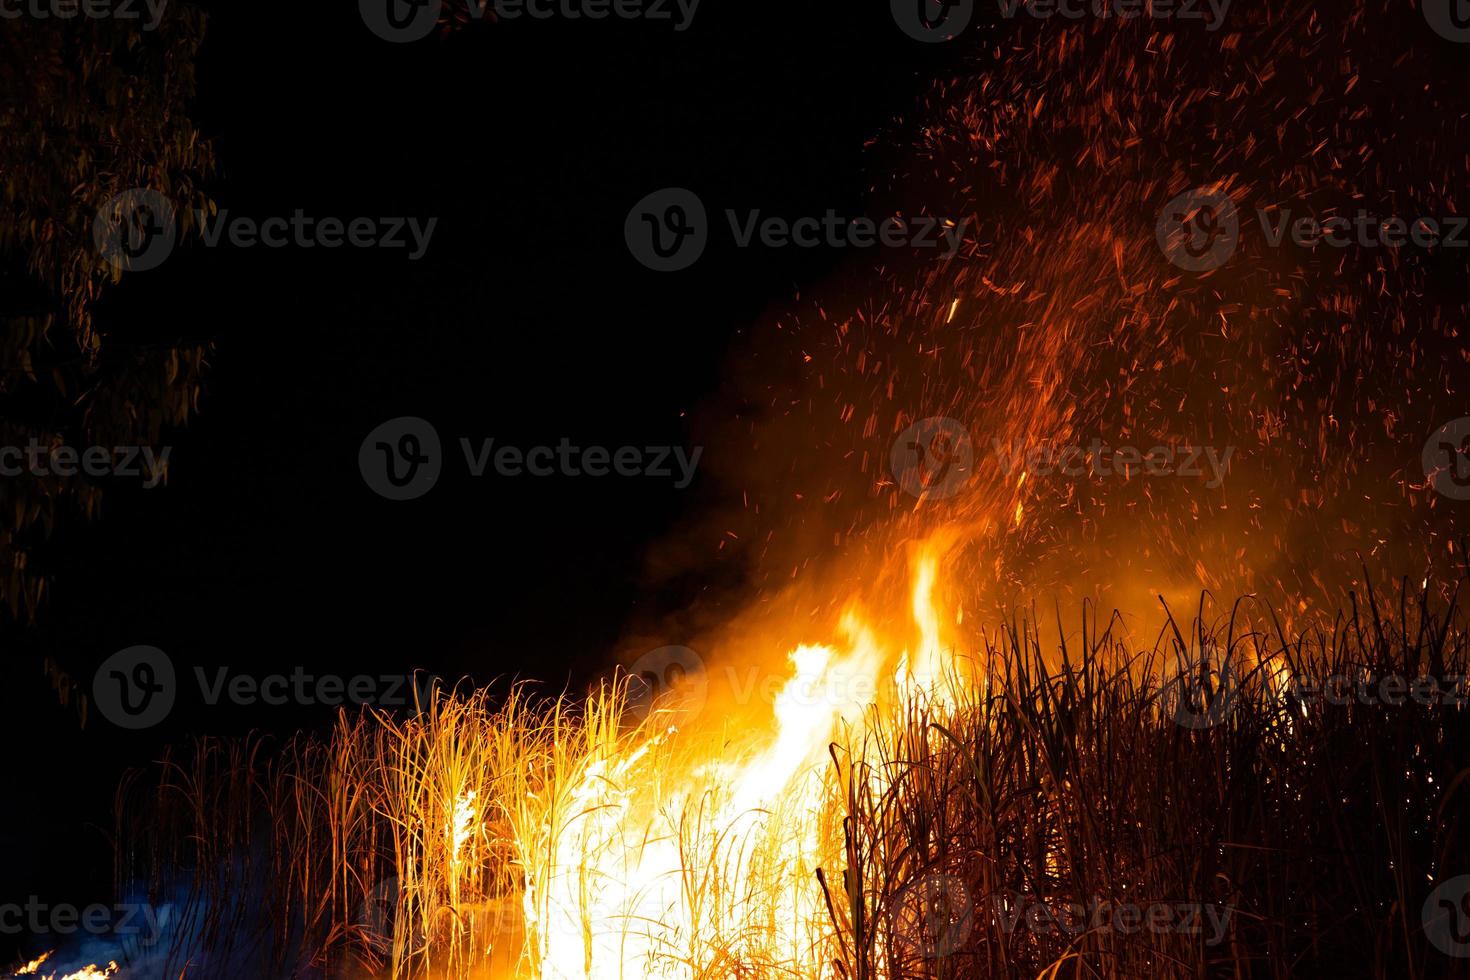 suikerriet wordt verbrand om de buitenste bladeren rond de stengels te verwijderen voor het oogsten foto